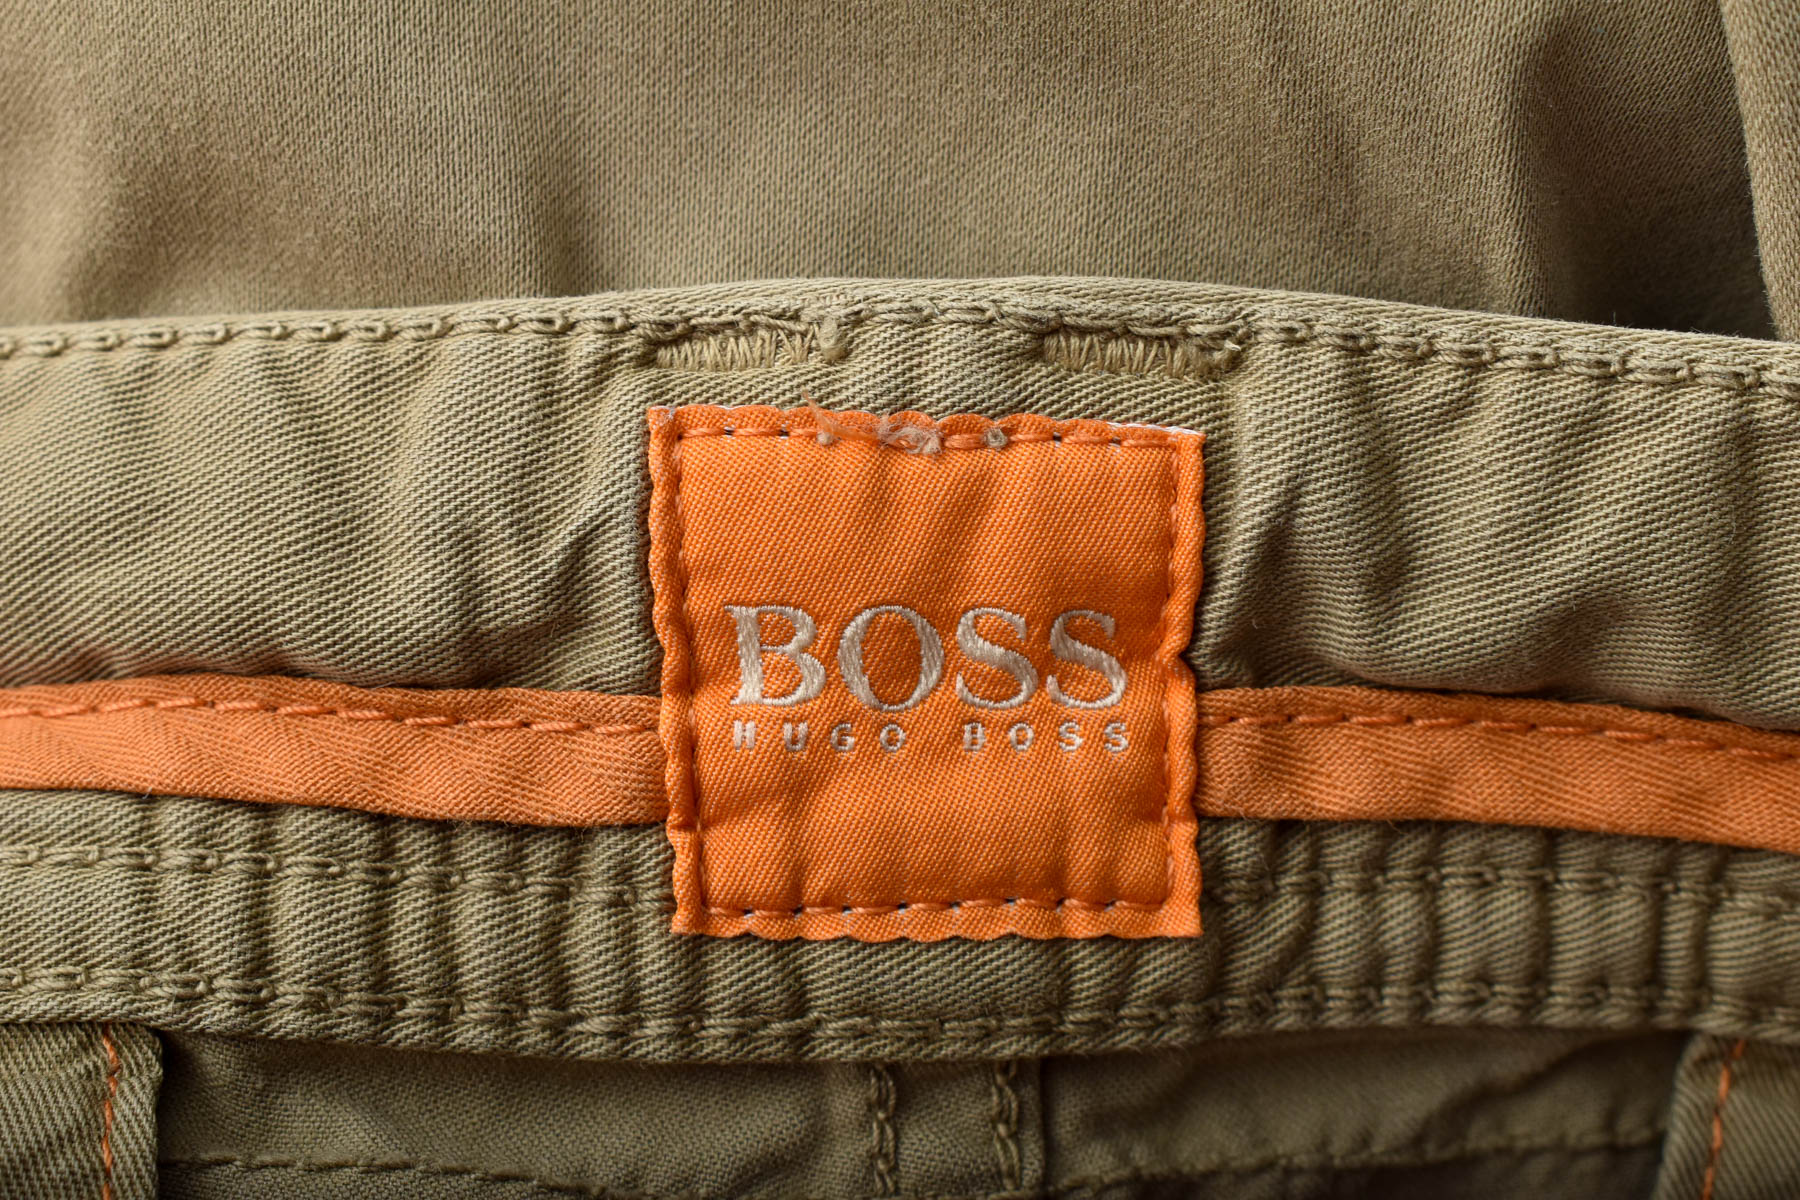 Męskie spodnie - HUGO BOSS - 2